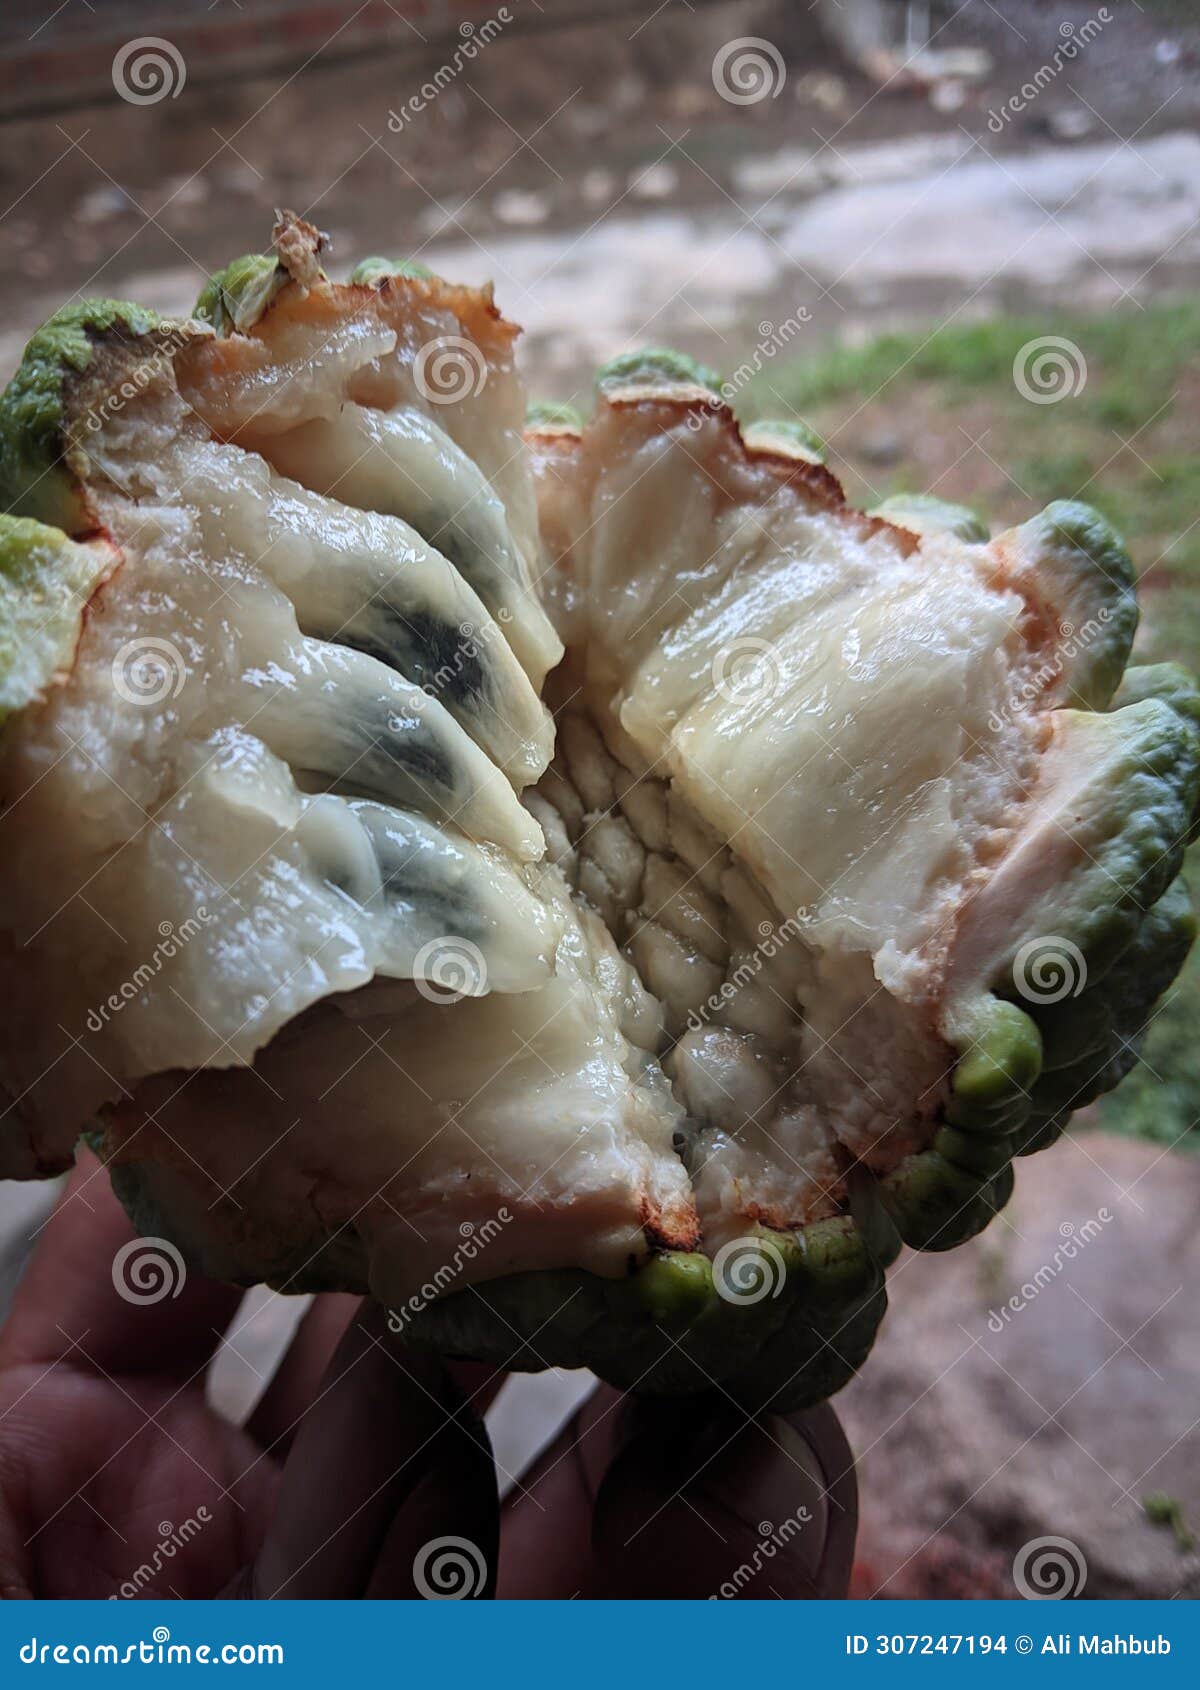 ripe srikaya fruit is cut in half